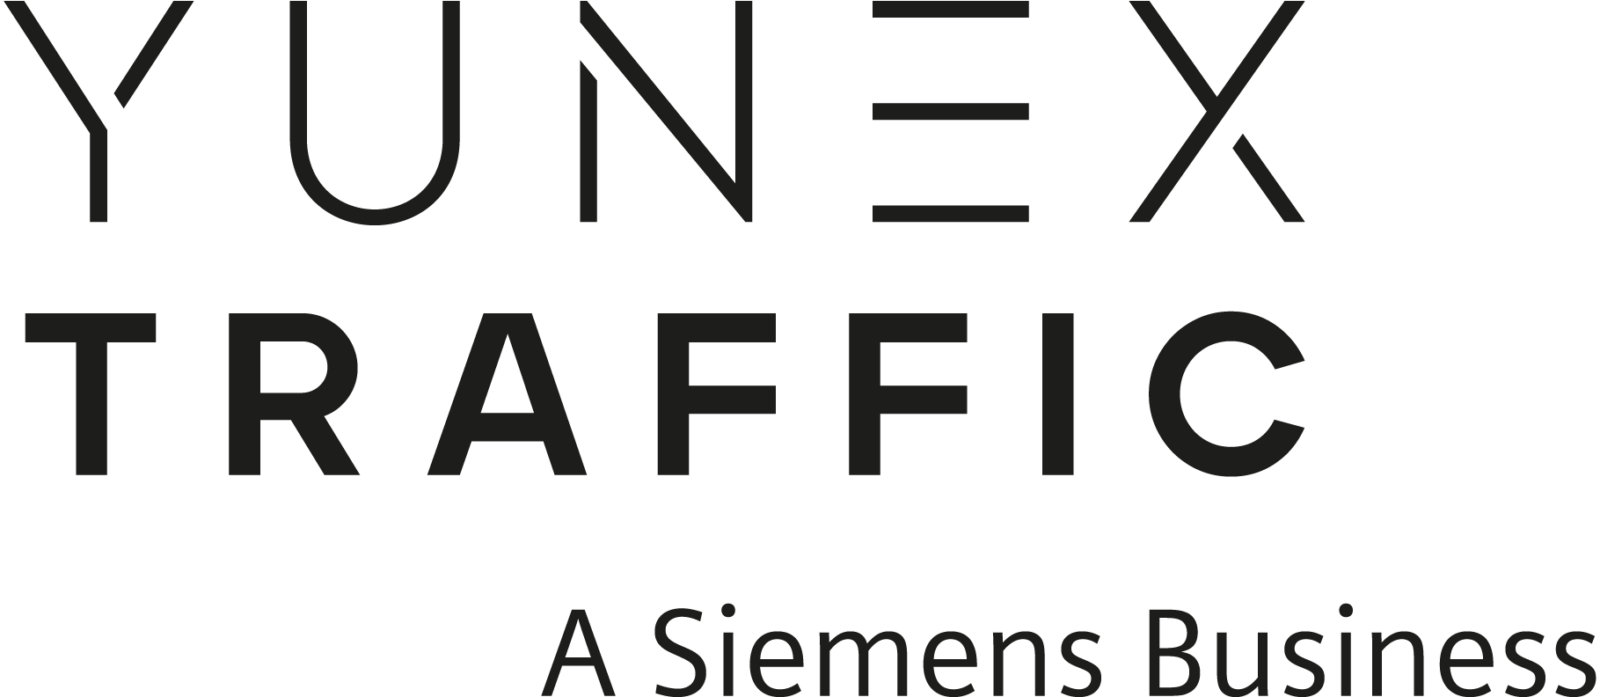 Logo von der Firma "Yunex traffic"